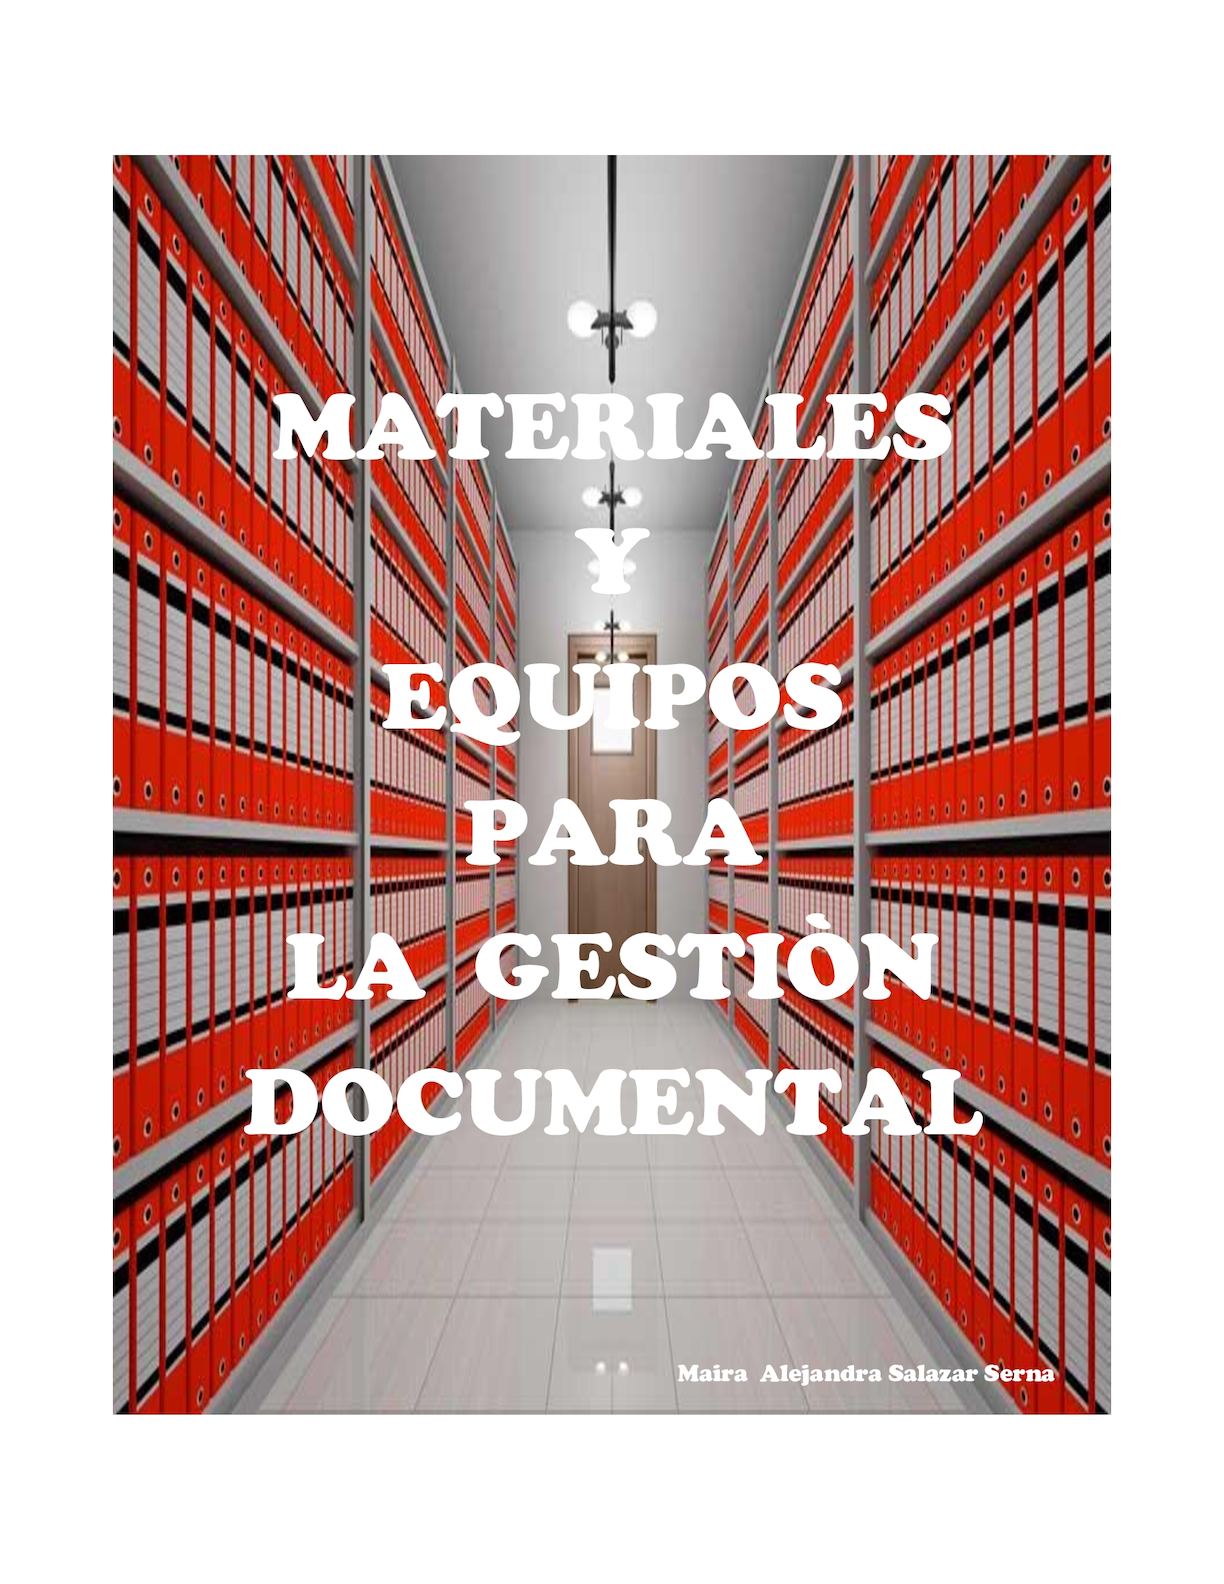 Materiales y documentos organizados